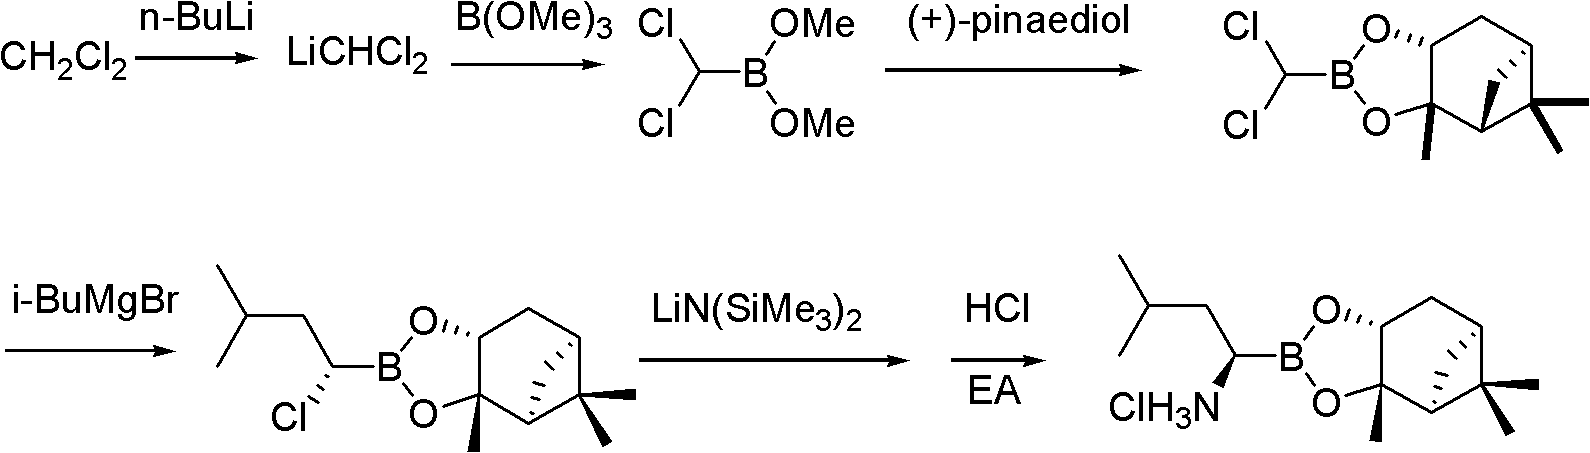 Synthetic method of proteasome inhibitor bortezomib and analogs